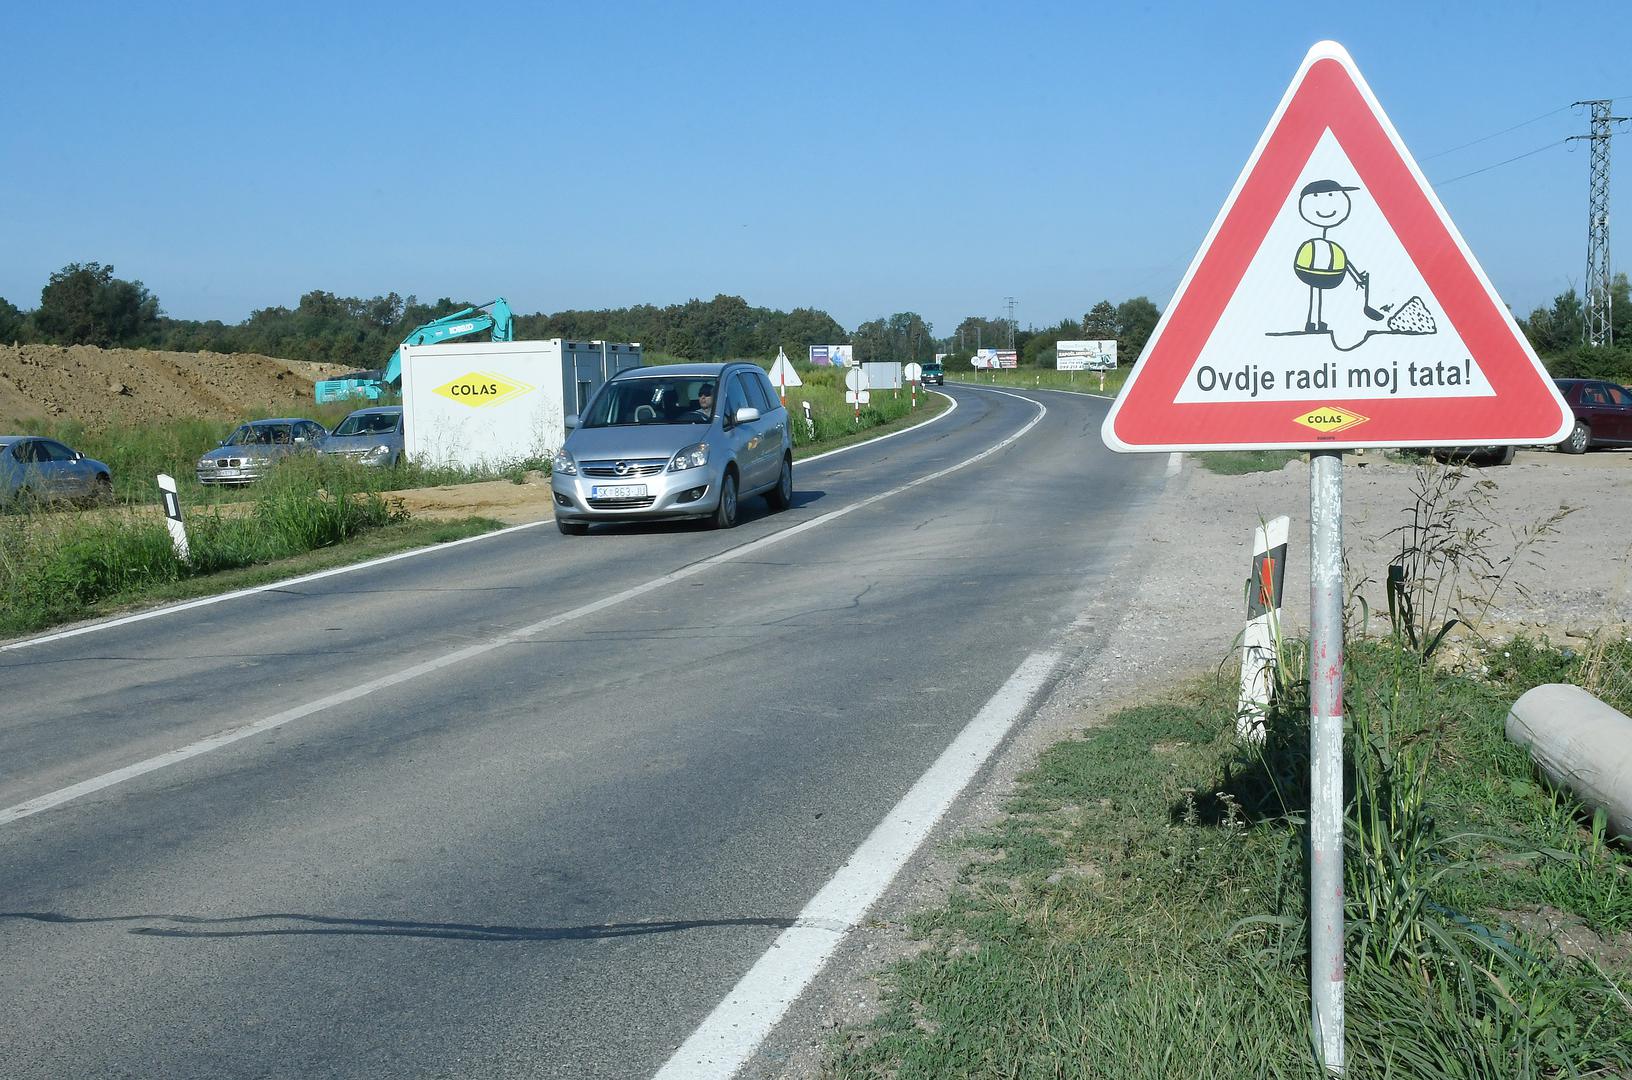  Znak je postavljen u sklopu kampanje povećanja svijesti o sigurnosti u prometu